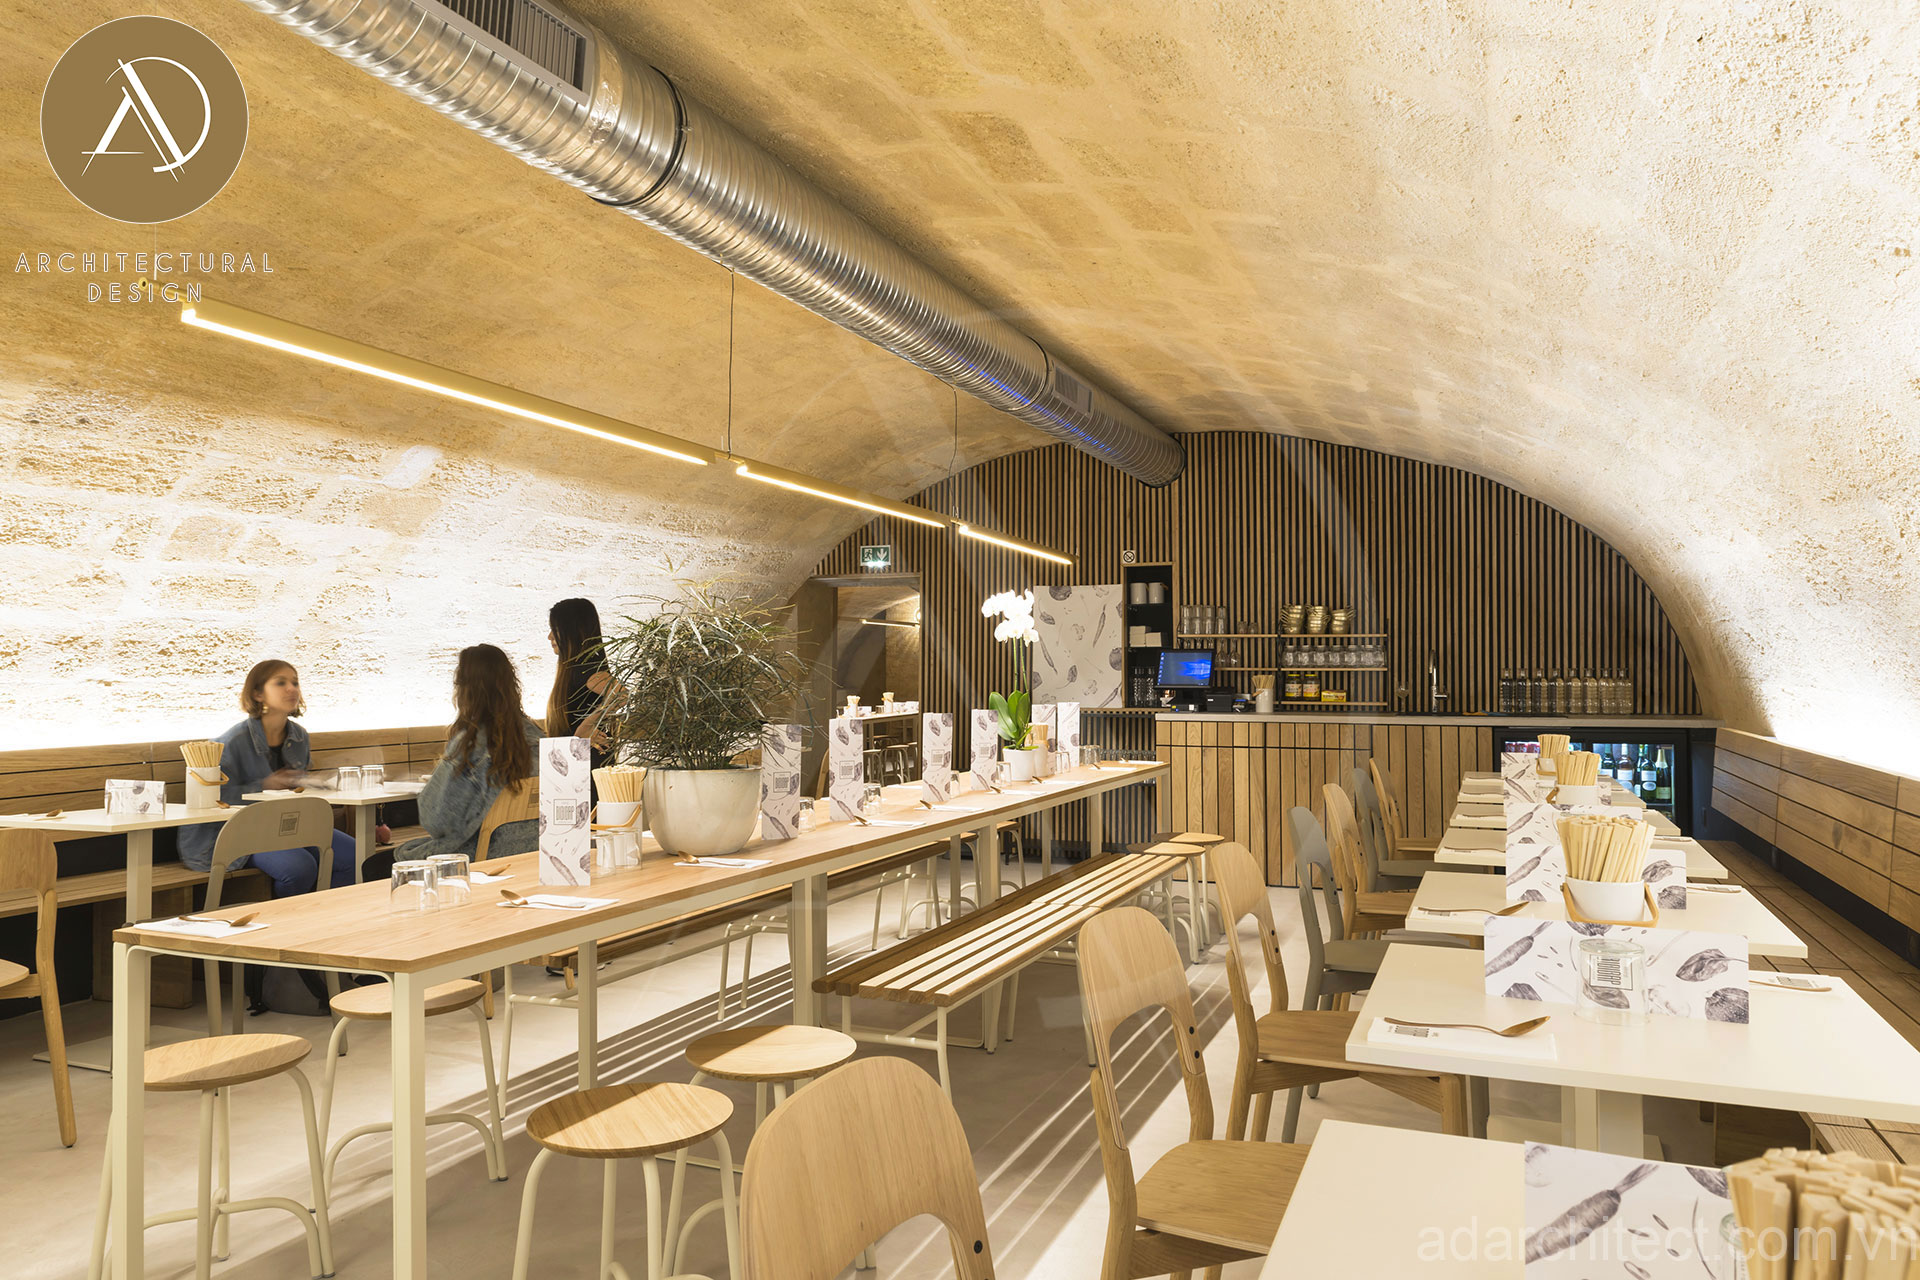 thiết kế quán ăn: không gian mái vòng ấn tượng mang đến không gian ấm cúng